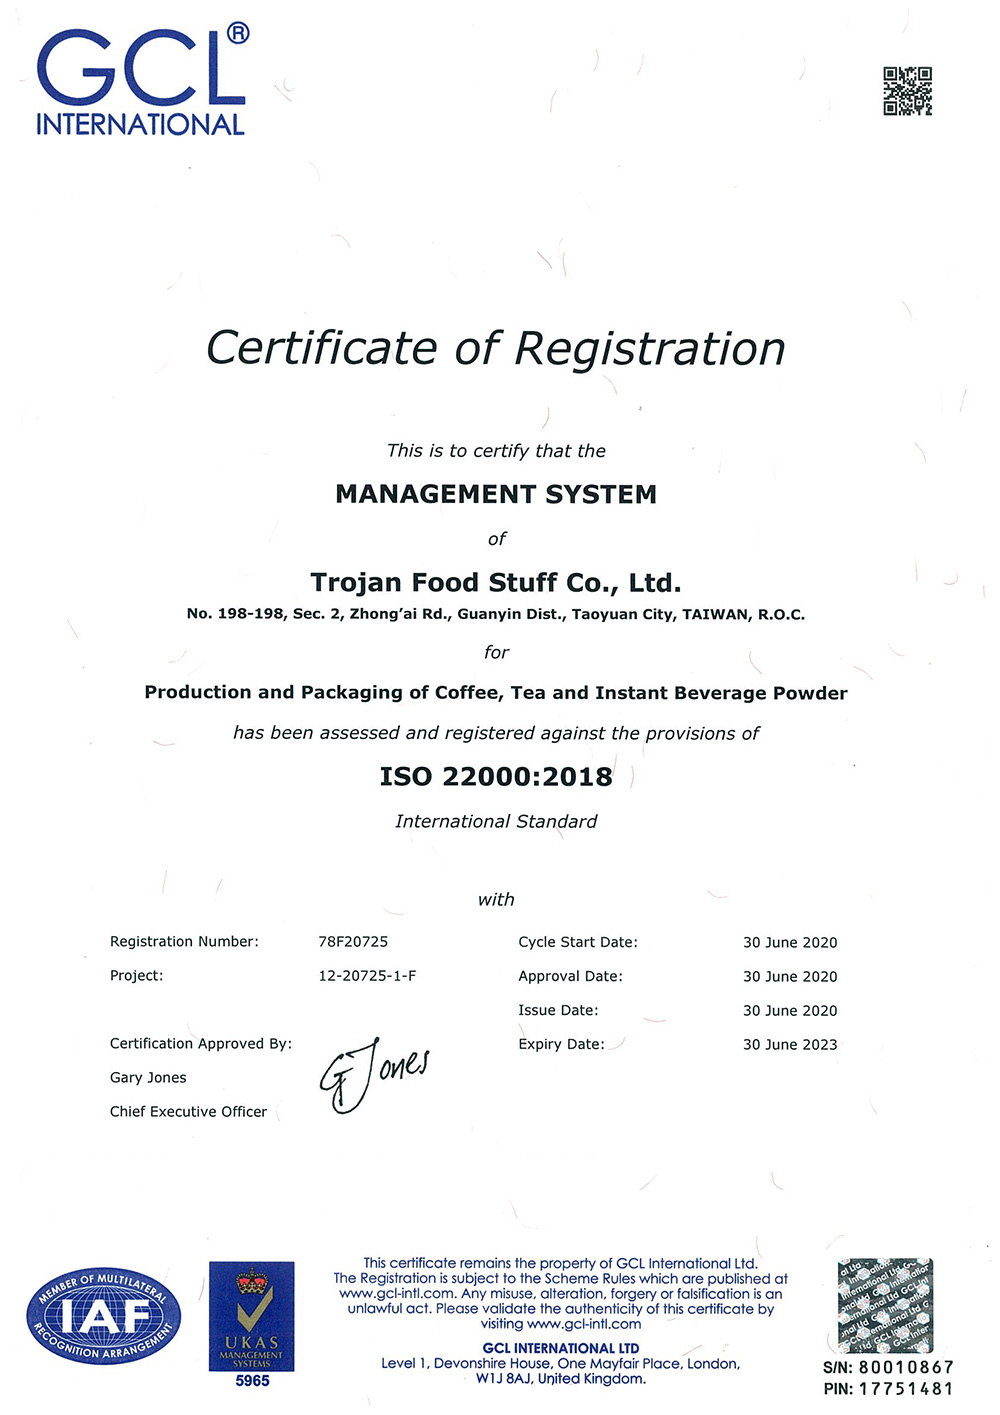 TROJAN erwarb 2019 die ISO-22000-Zertifizierung